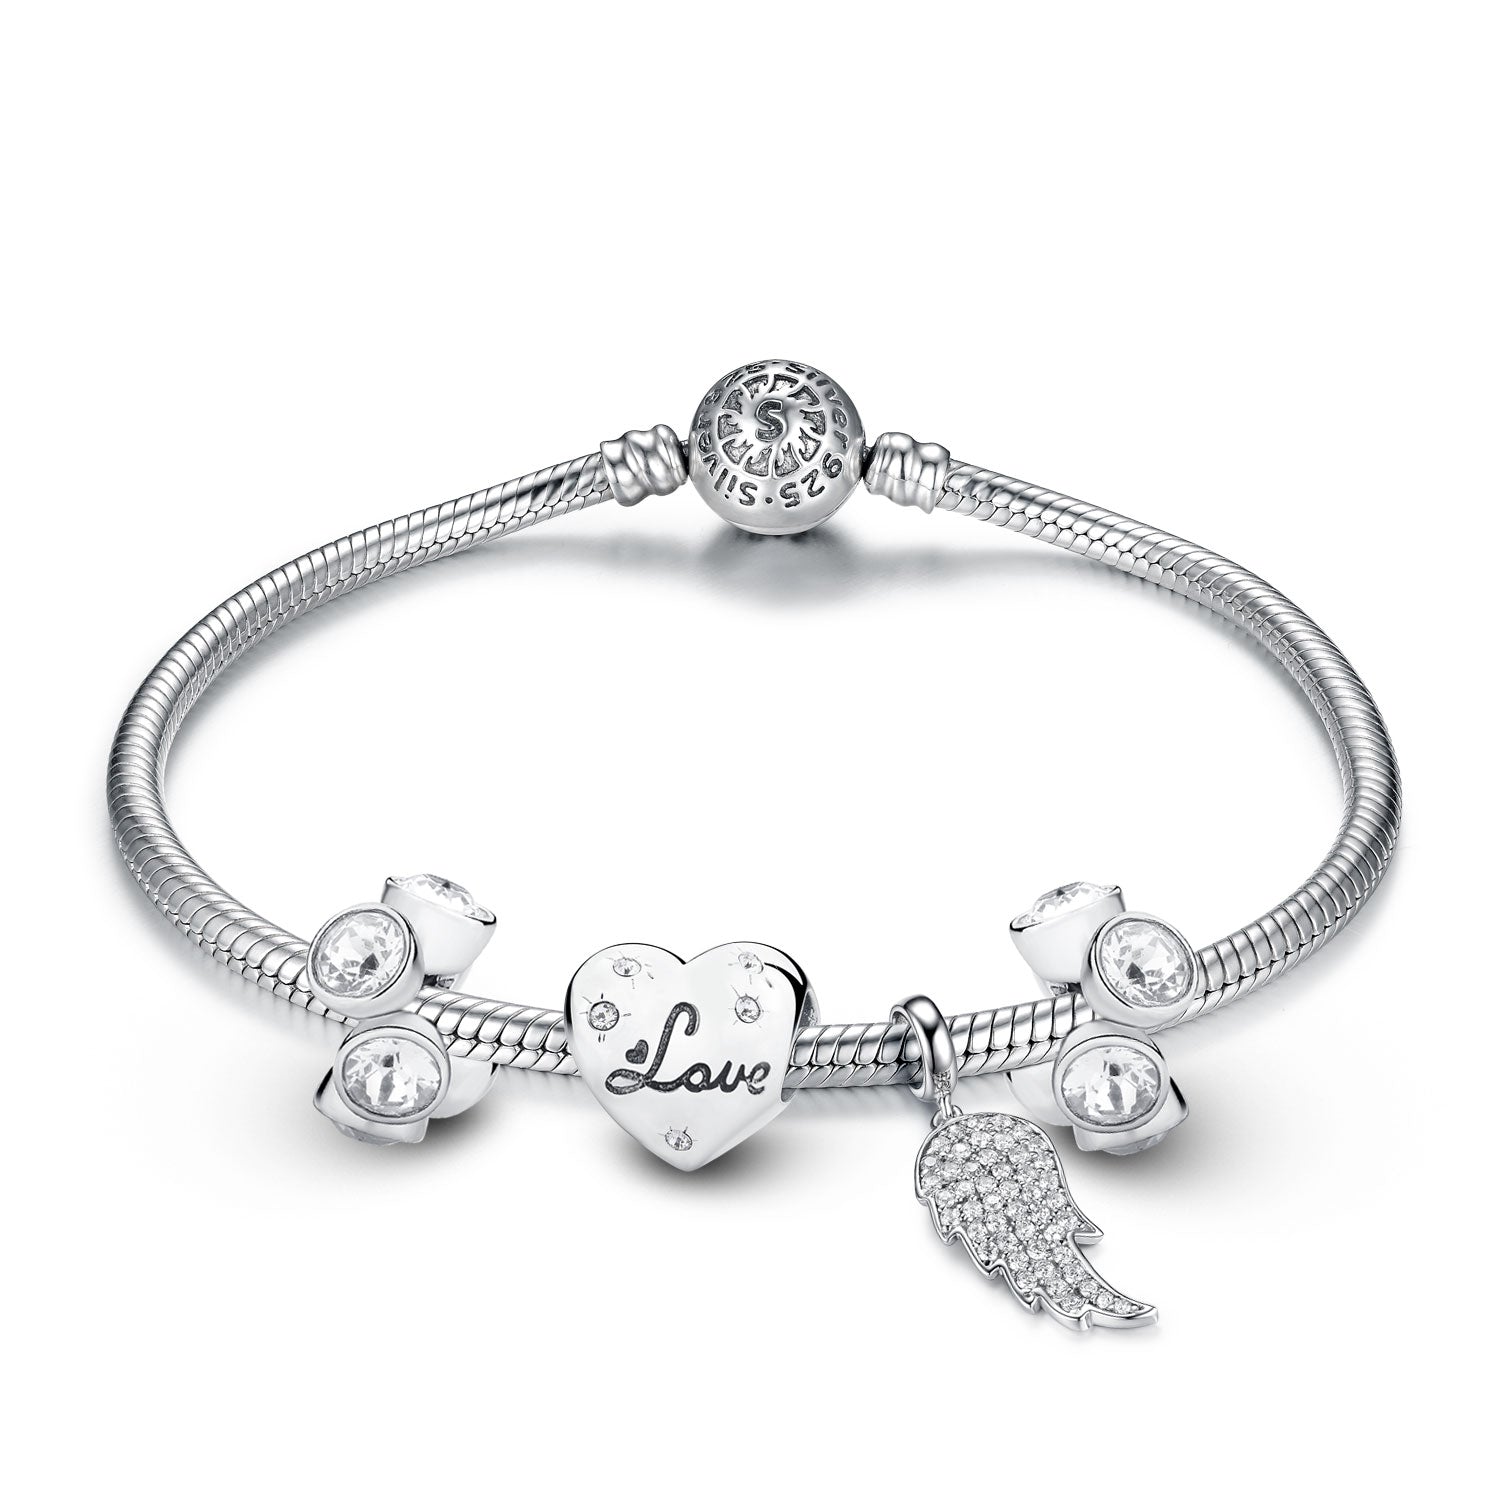 Jewdii 925 Sterling Silver Bracelet Love Leaf Beads and Crystals Set